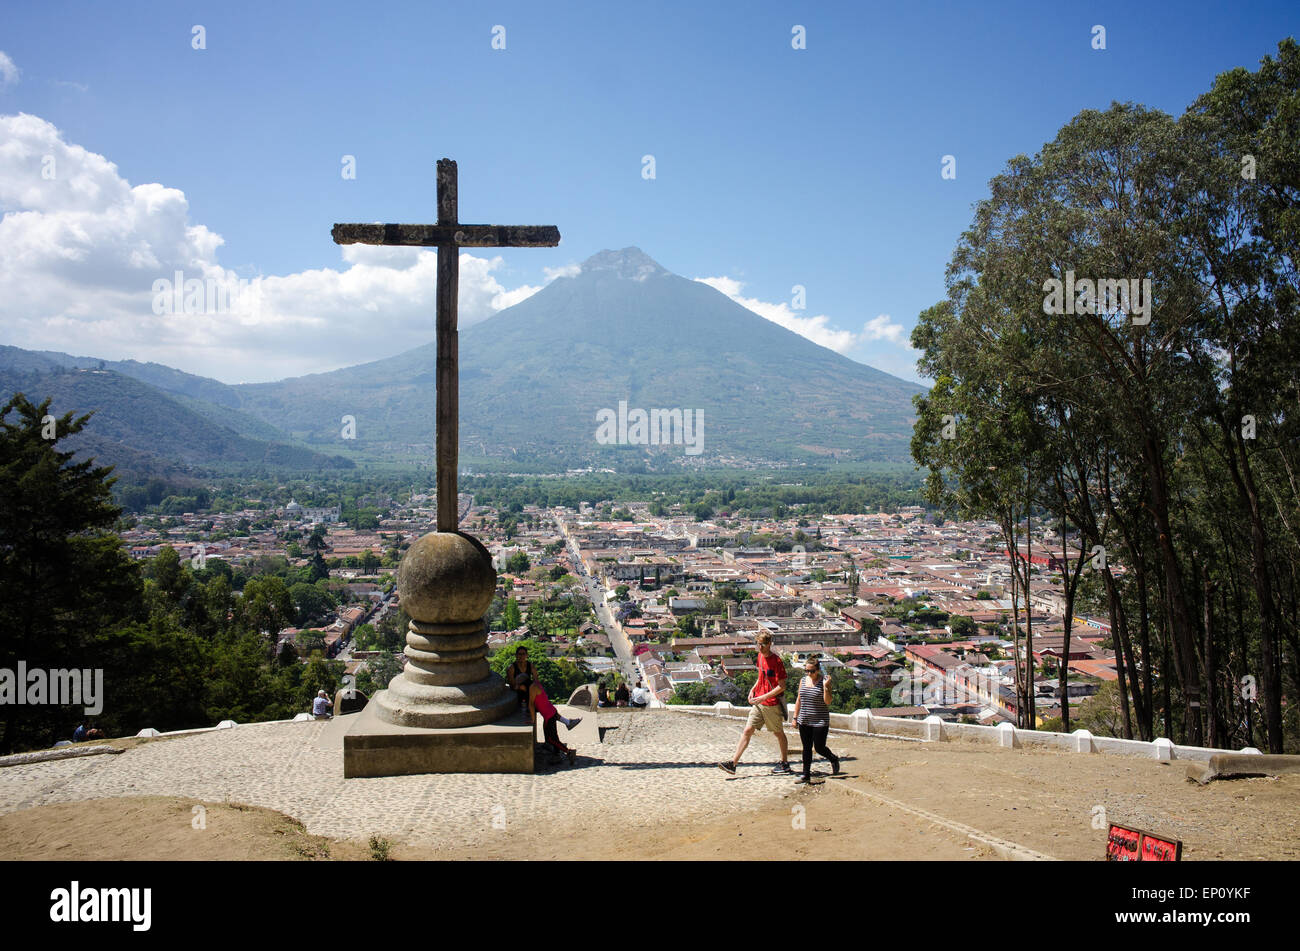 Tourists and locals gather at Cerro de la Cruz in Antigua, Guatemala on April 1, 2015. Stock Photo